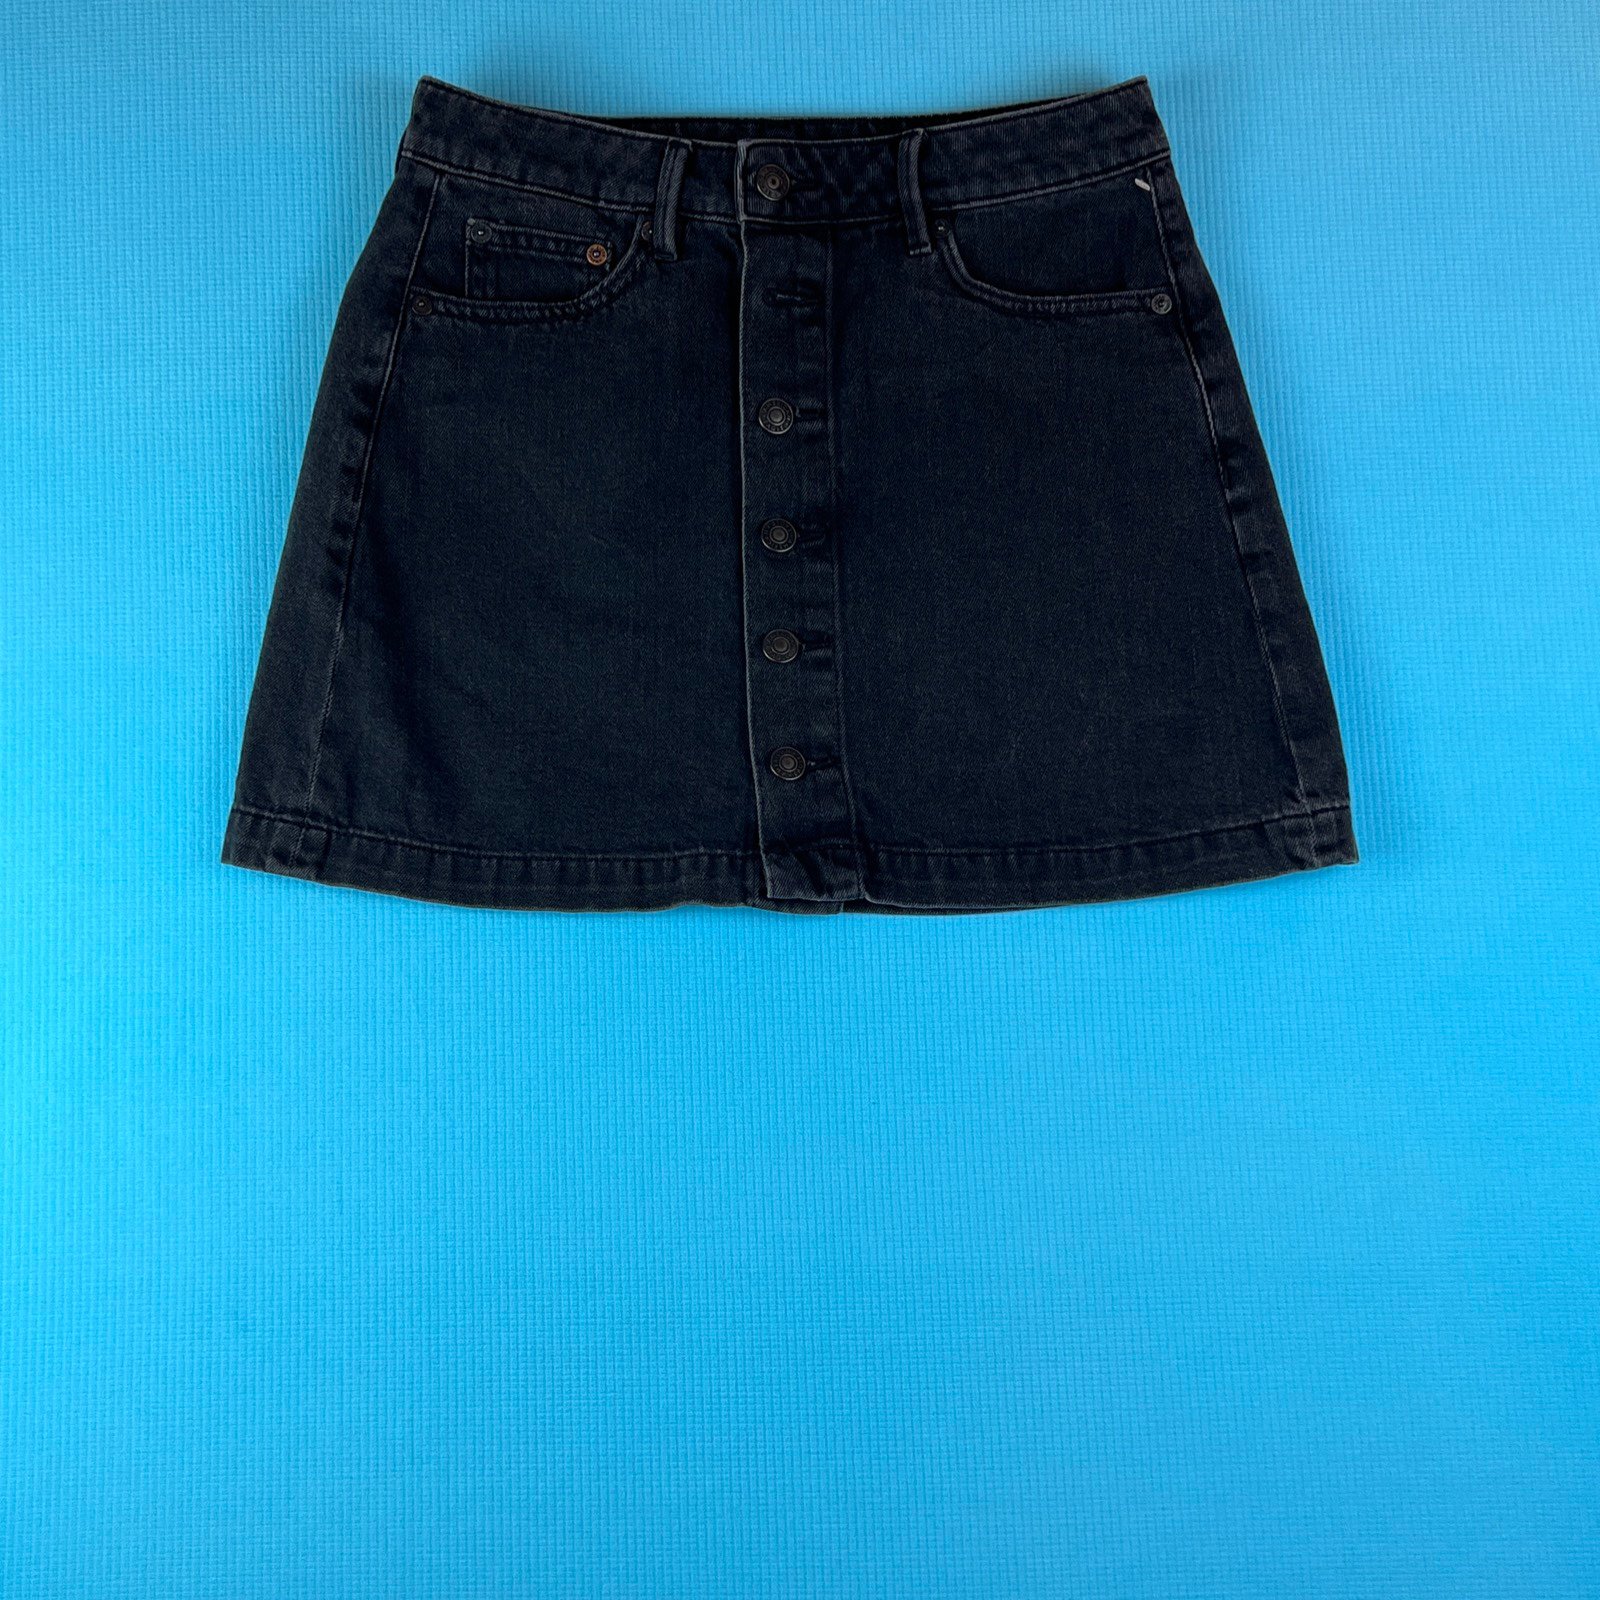 Affordable NWOT Black American Eagle Black Jean Skirt S